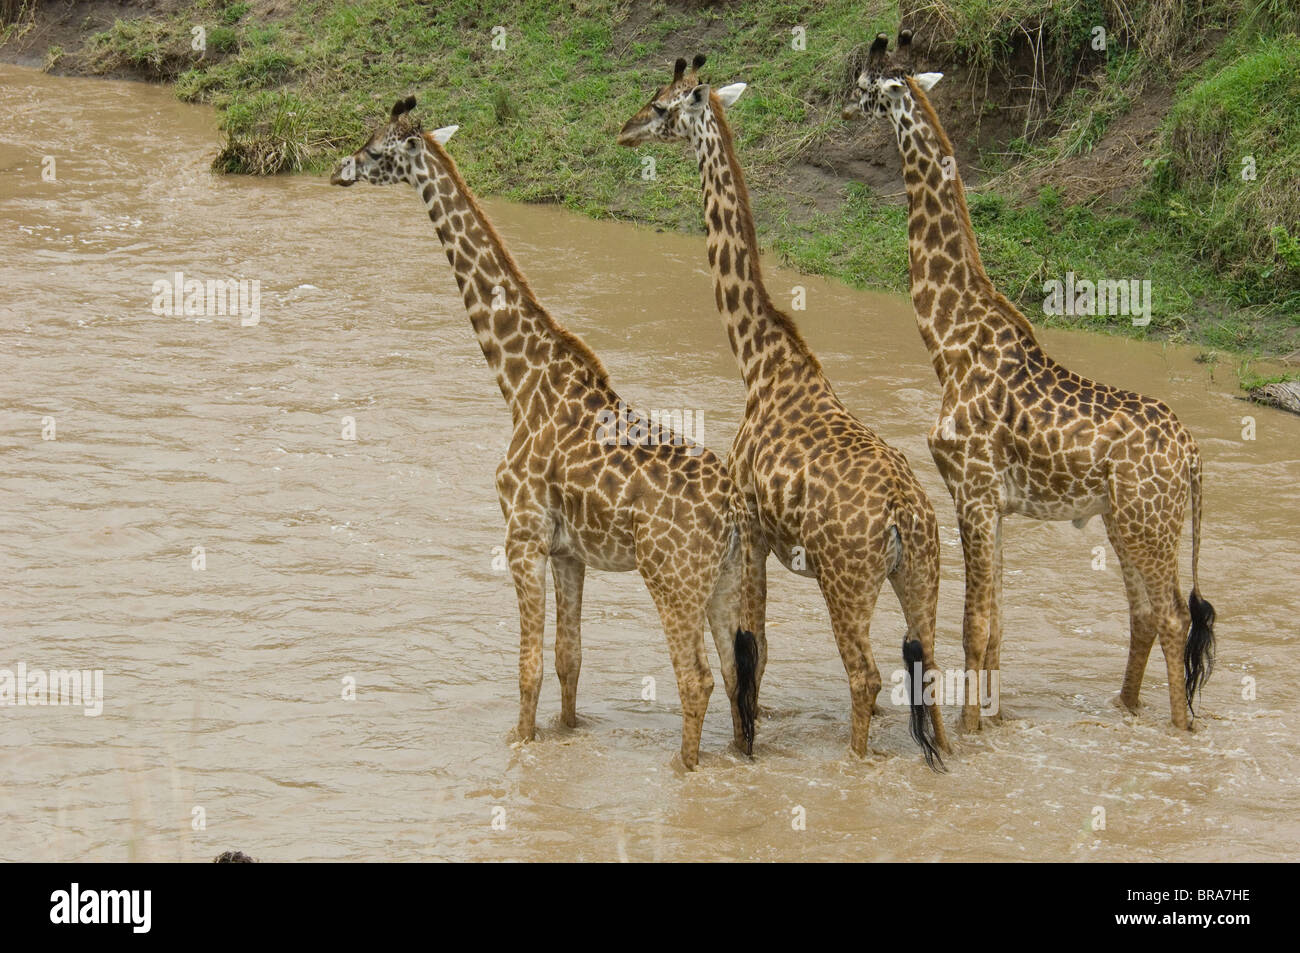 Trois GIRAFES DEBOUT DANS L'EAU DE LA RIVIÈRE DE LA RÉSERVE NATIONALE DE Masai Mara au Kenya Afrique Banque D'Images